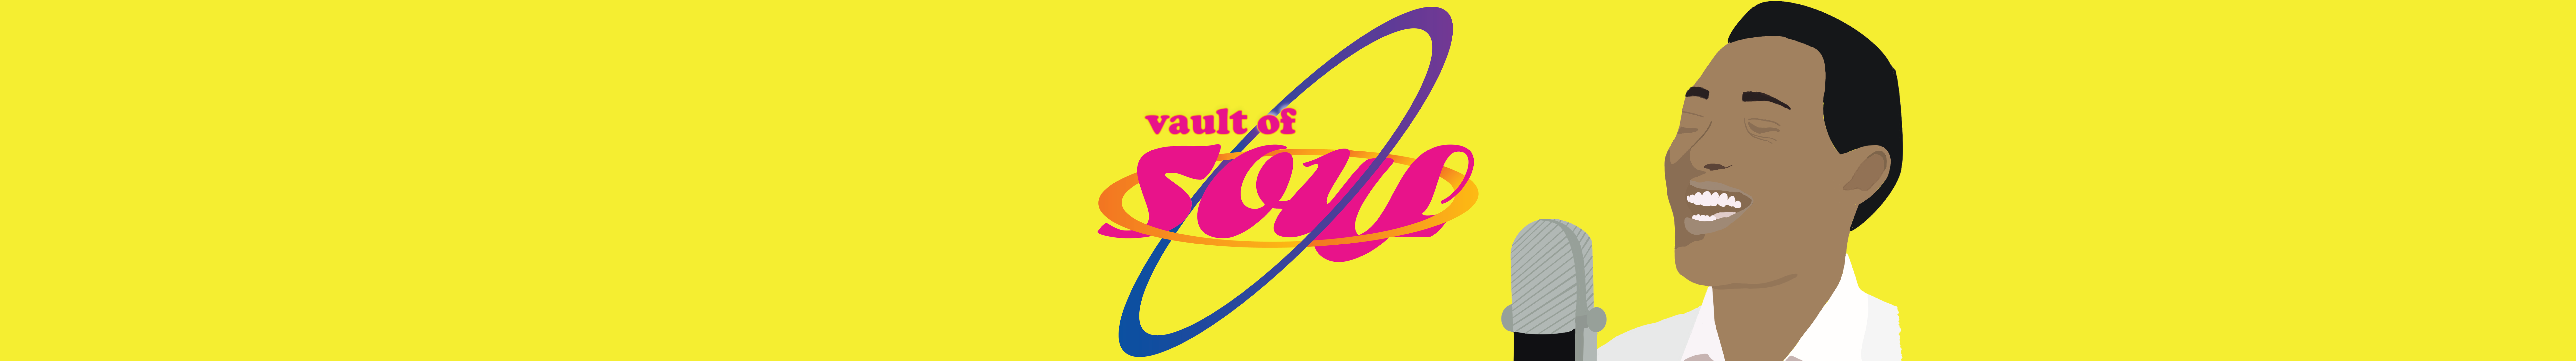 The Vault of Soul: Sam Cooke